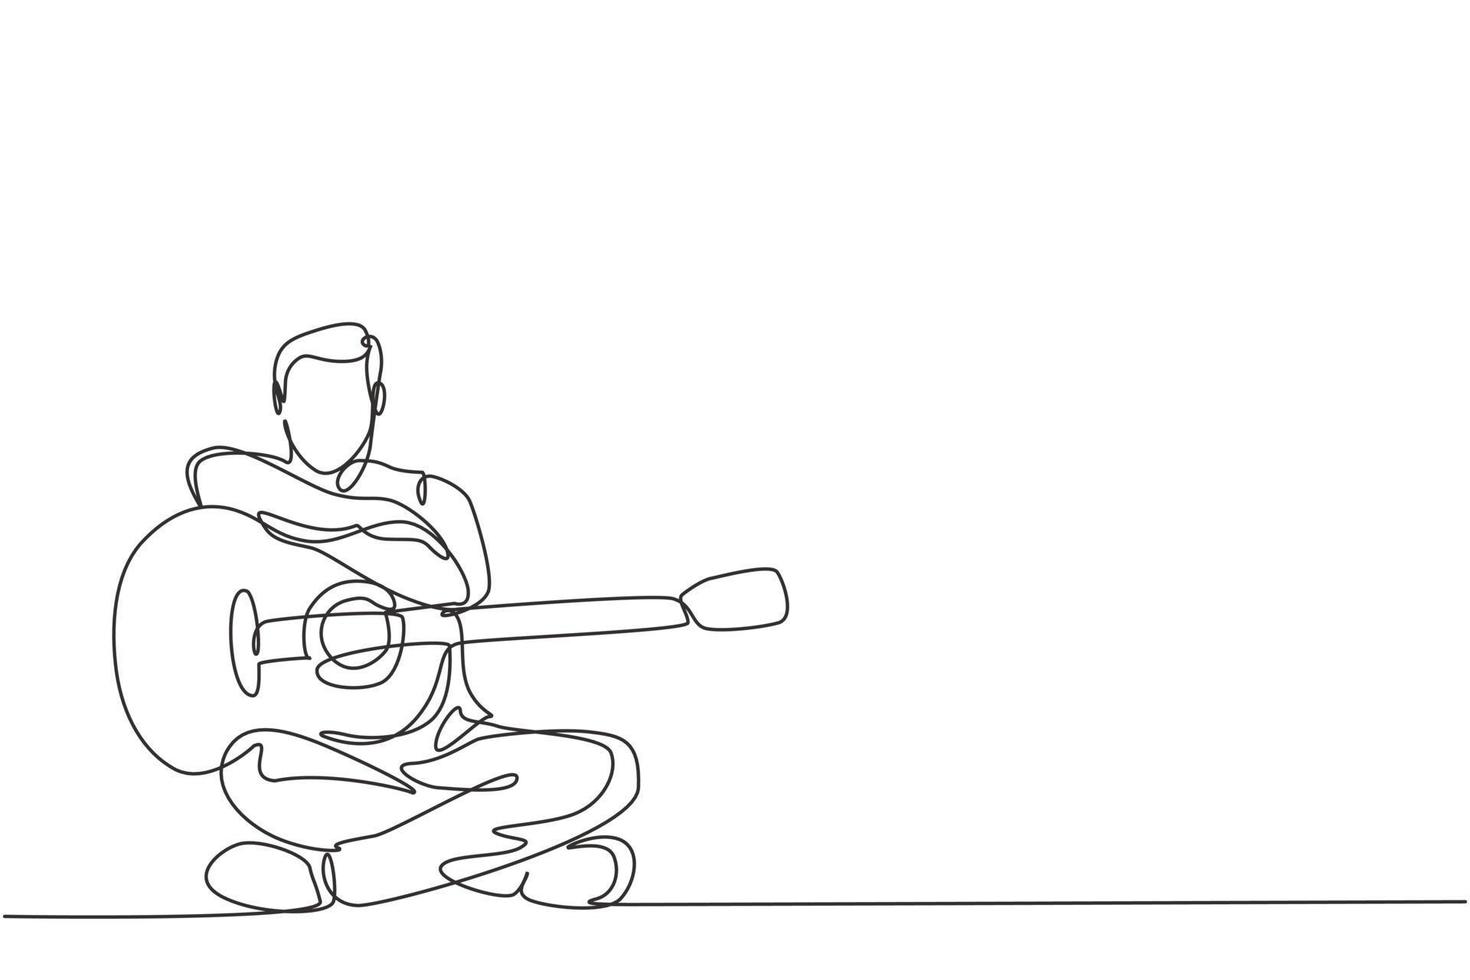 Eine durchgehende Strichzeichnung eines jungen glücklichen männlichen Gitarristen, der nach dem Spielen der Akustikgitarre posiert. dynamischer Musiker Künstler Performance Konzept einzeilige Grafik Draw Design Vector Illustration